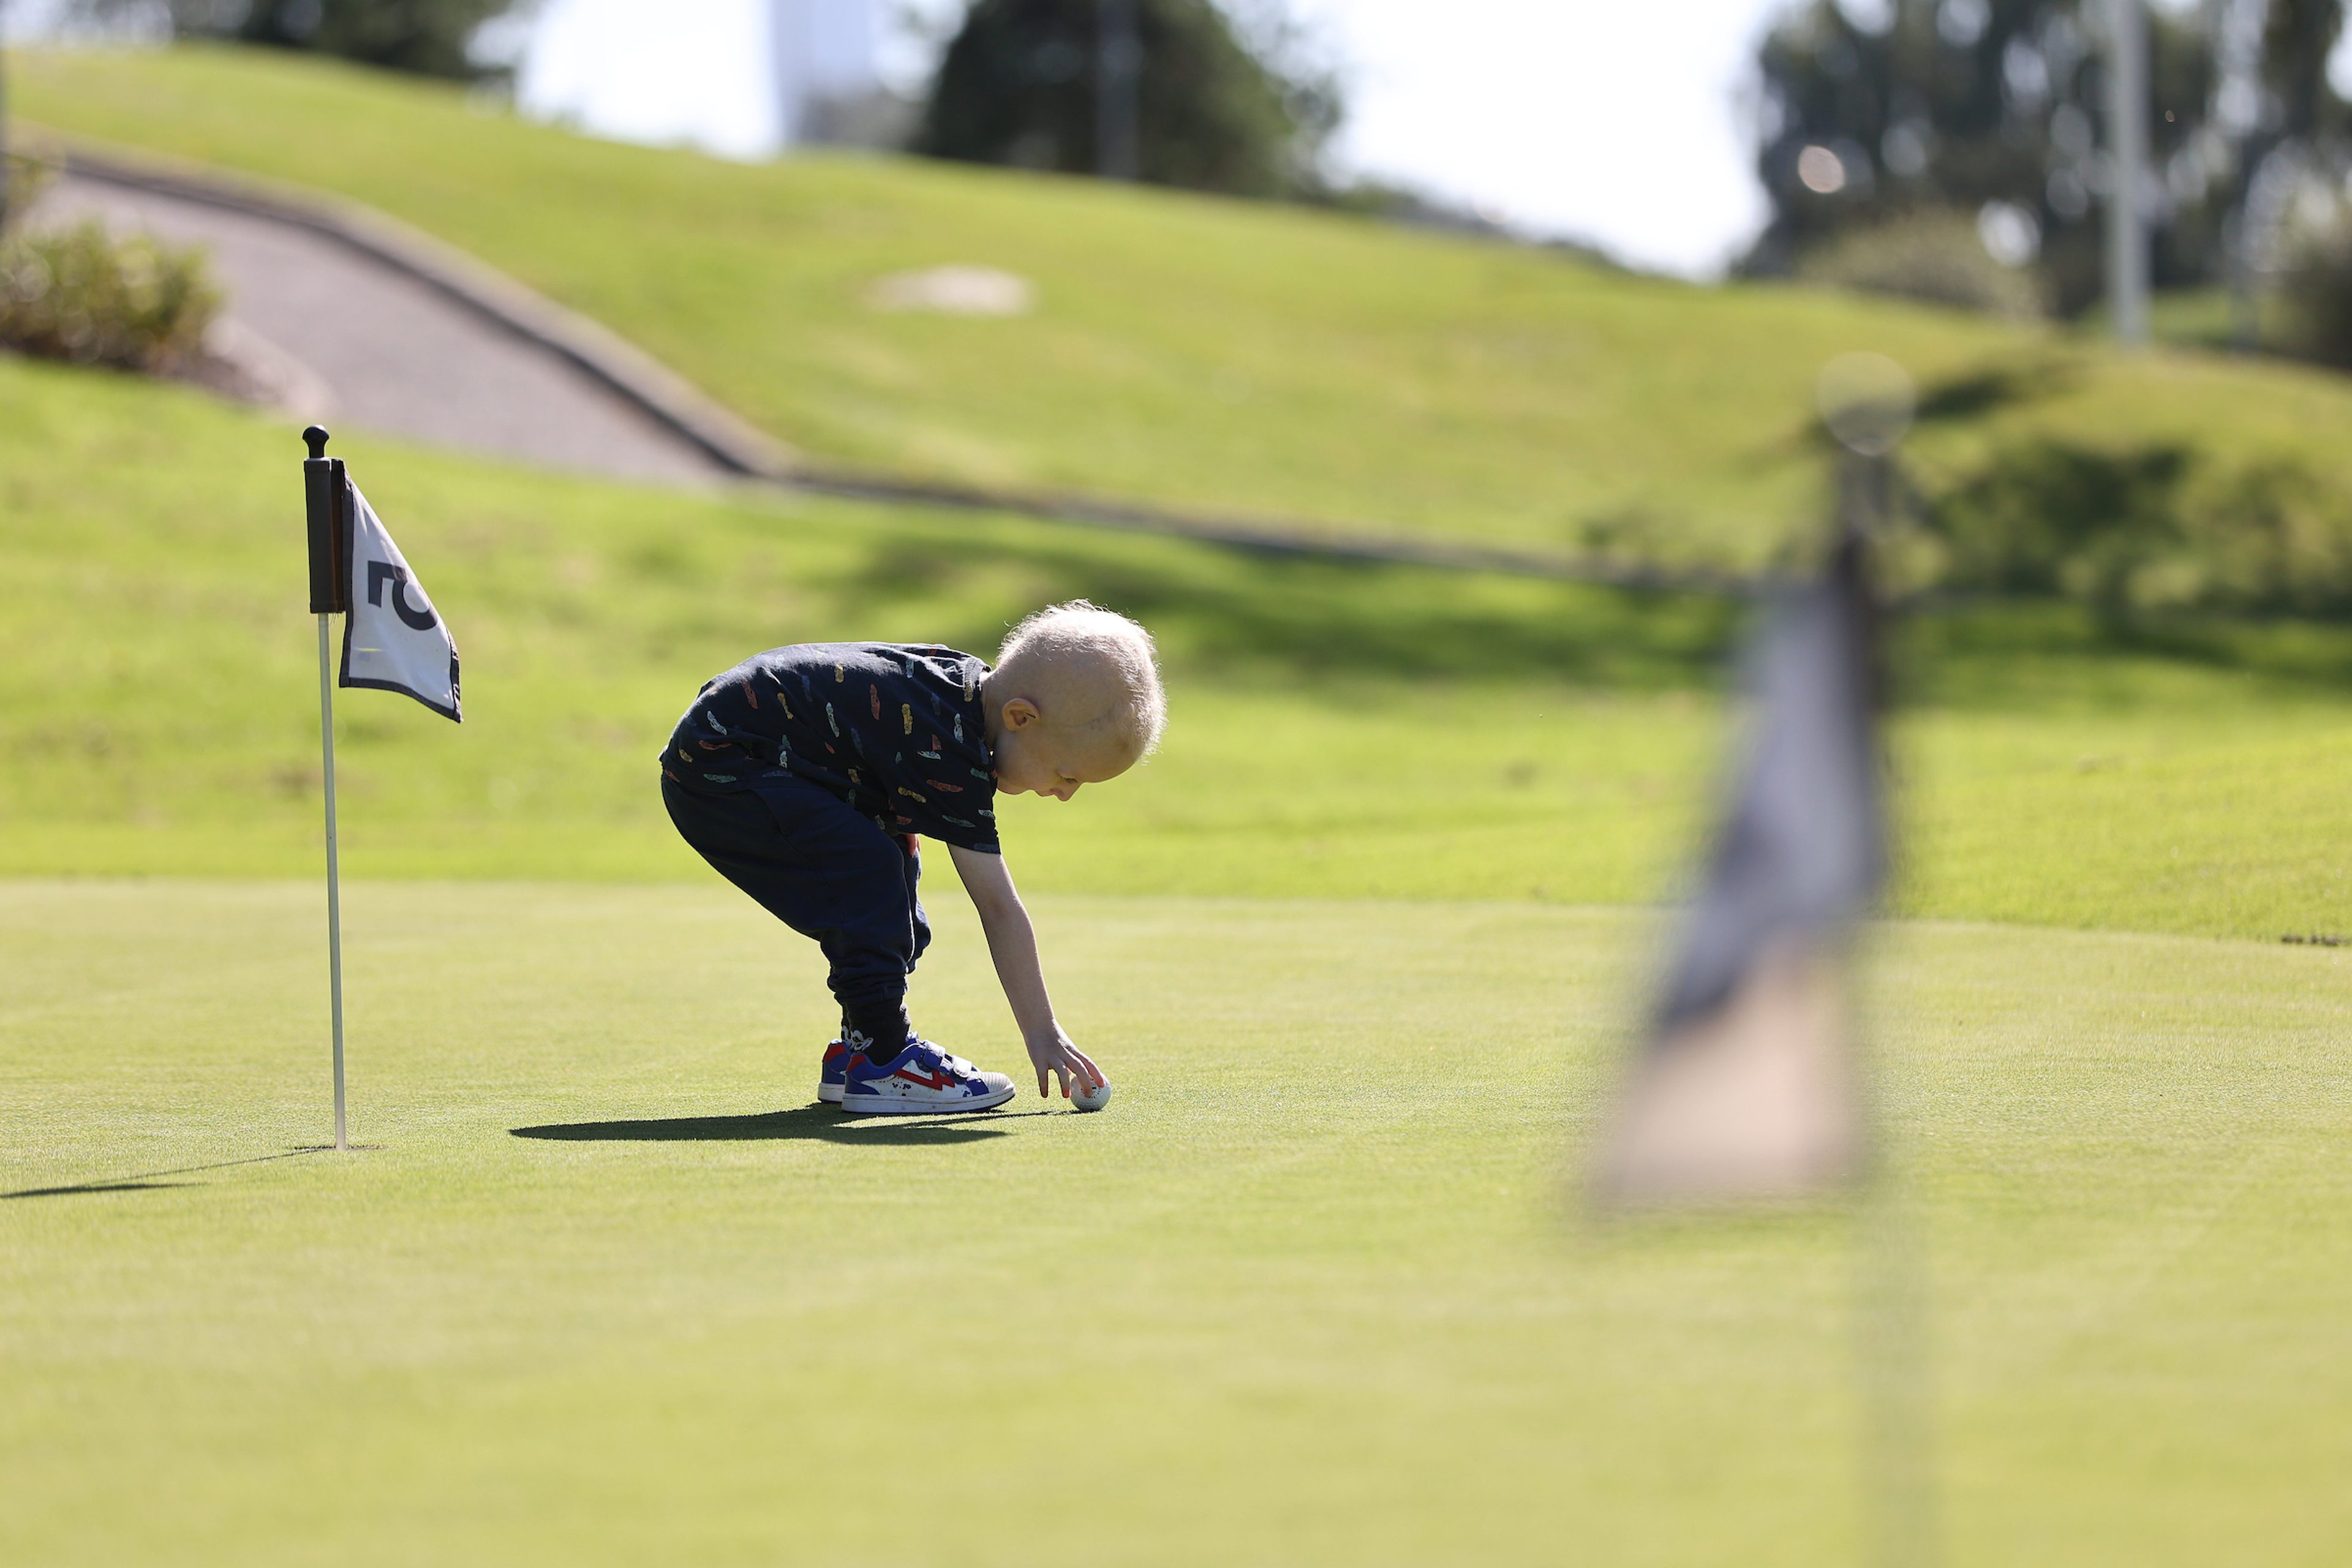 Ett barn på golfbanan